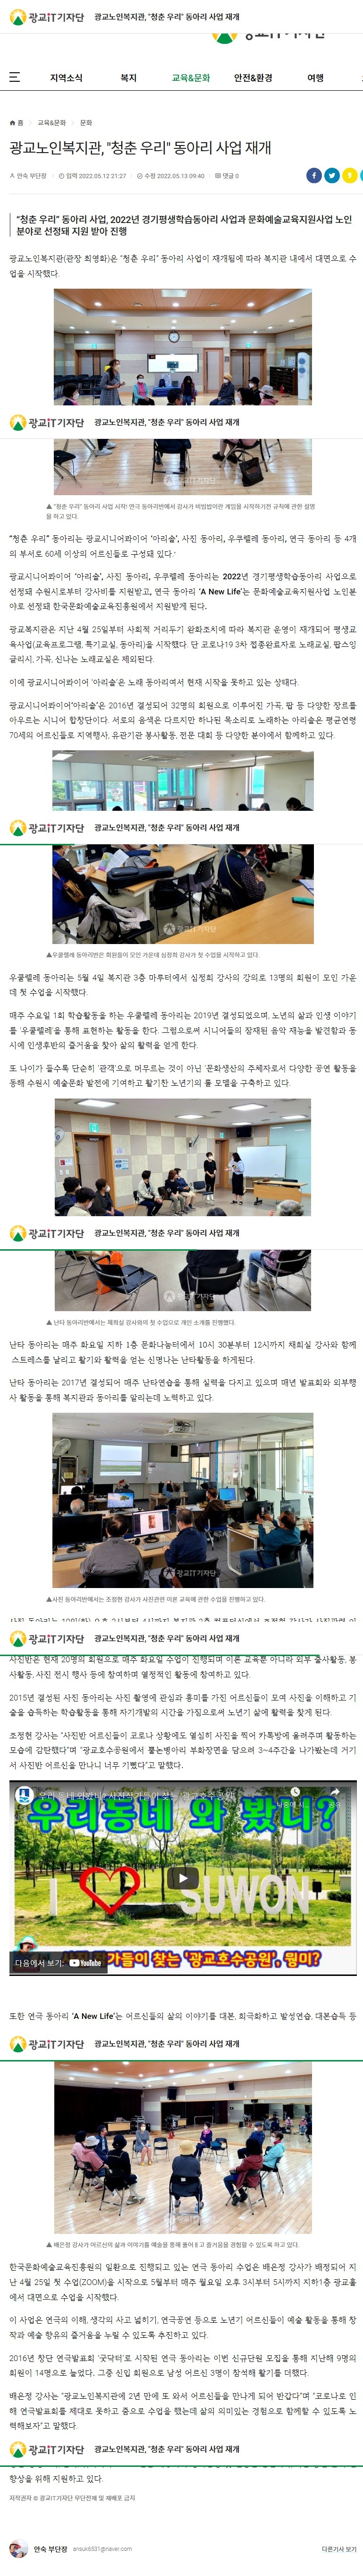 광교노인복지관, 청춘 우리 동아리 사업 재개.jpg